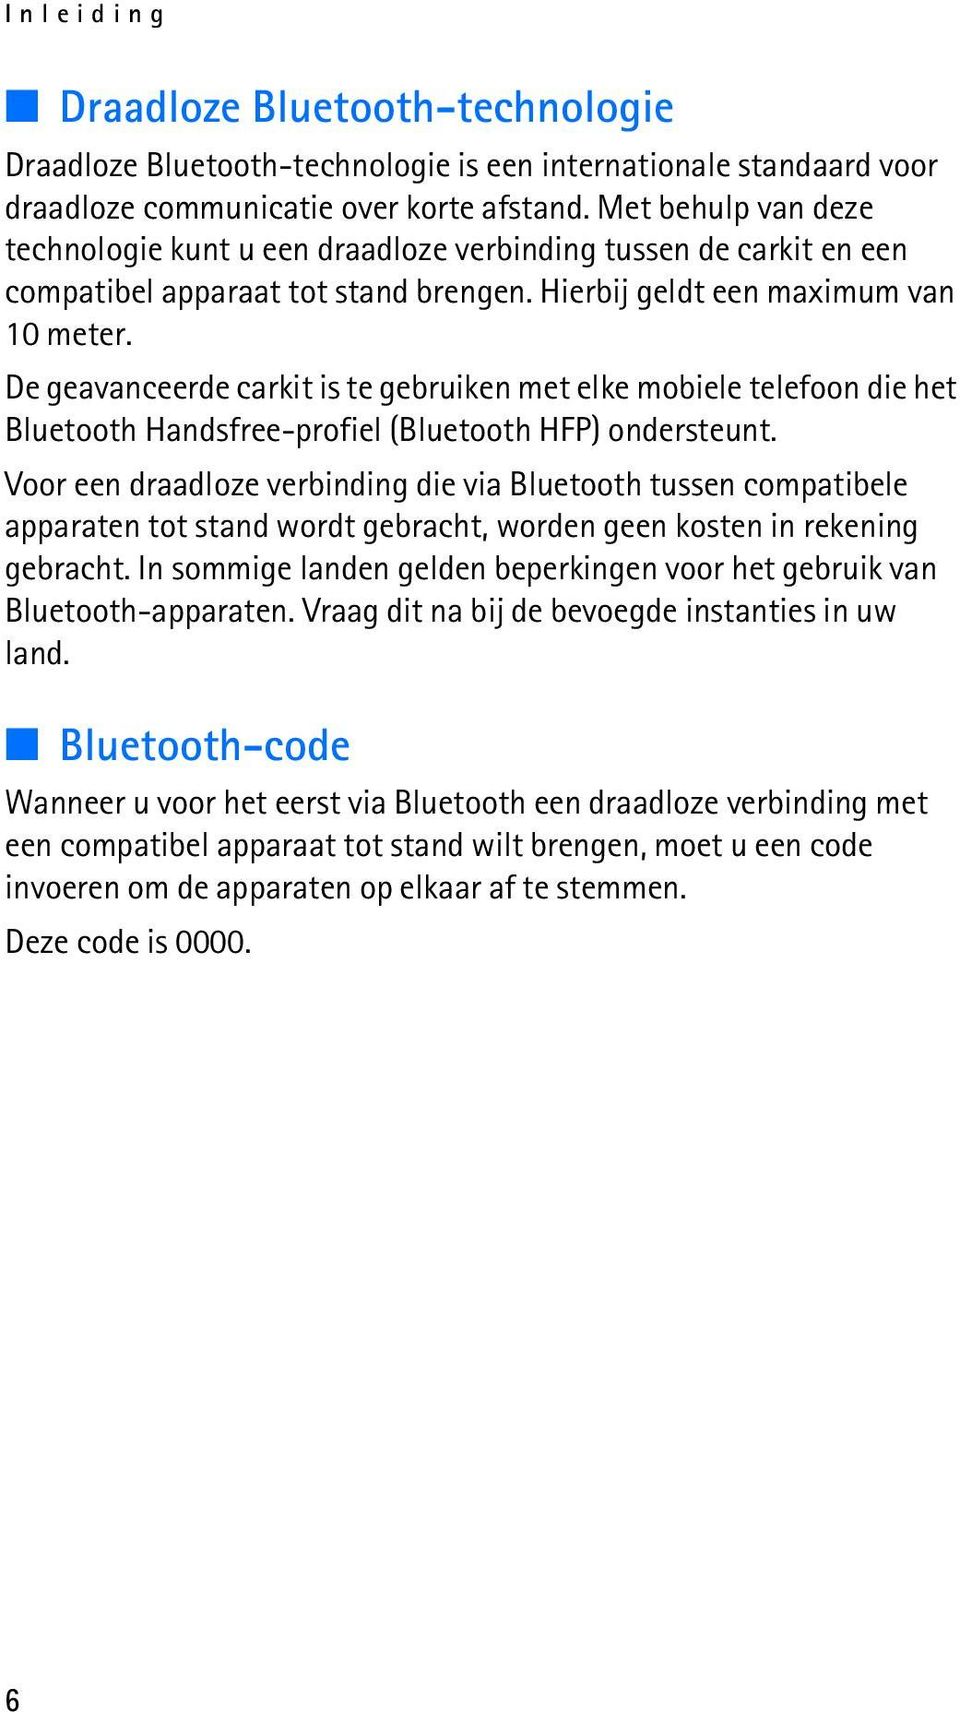 De geavanceerde carkit is te gebruiken met elke mobiele telefoon die het Bluetooth Handsfree-profiel (Bluetooth HFP) ondersteunt.